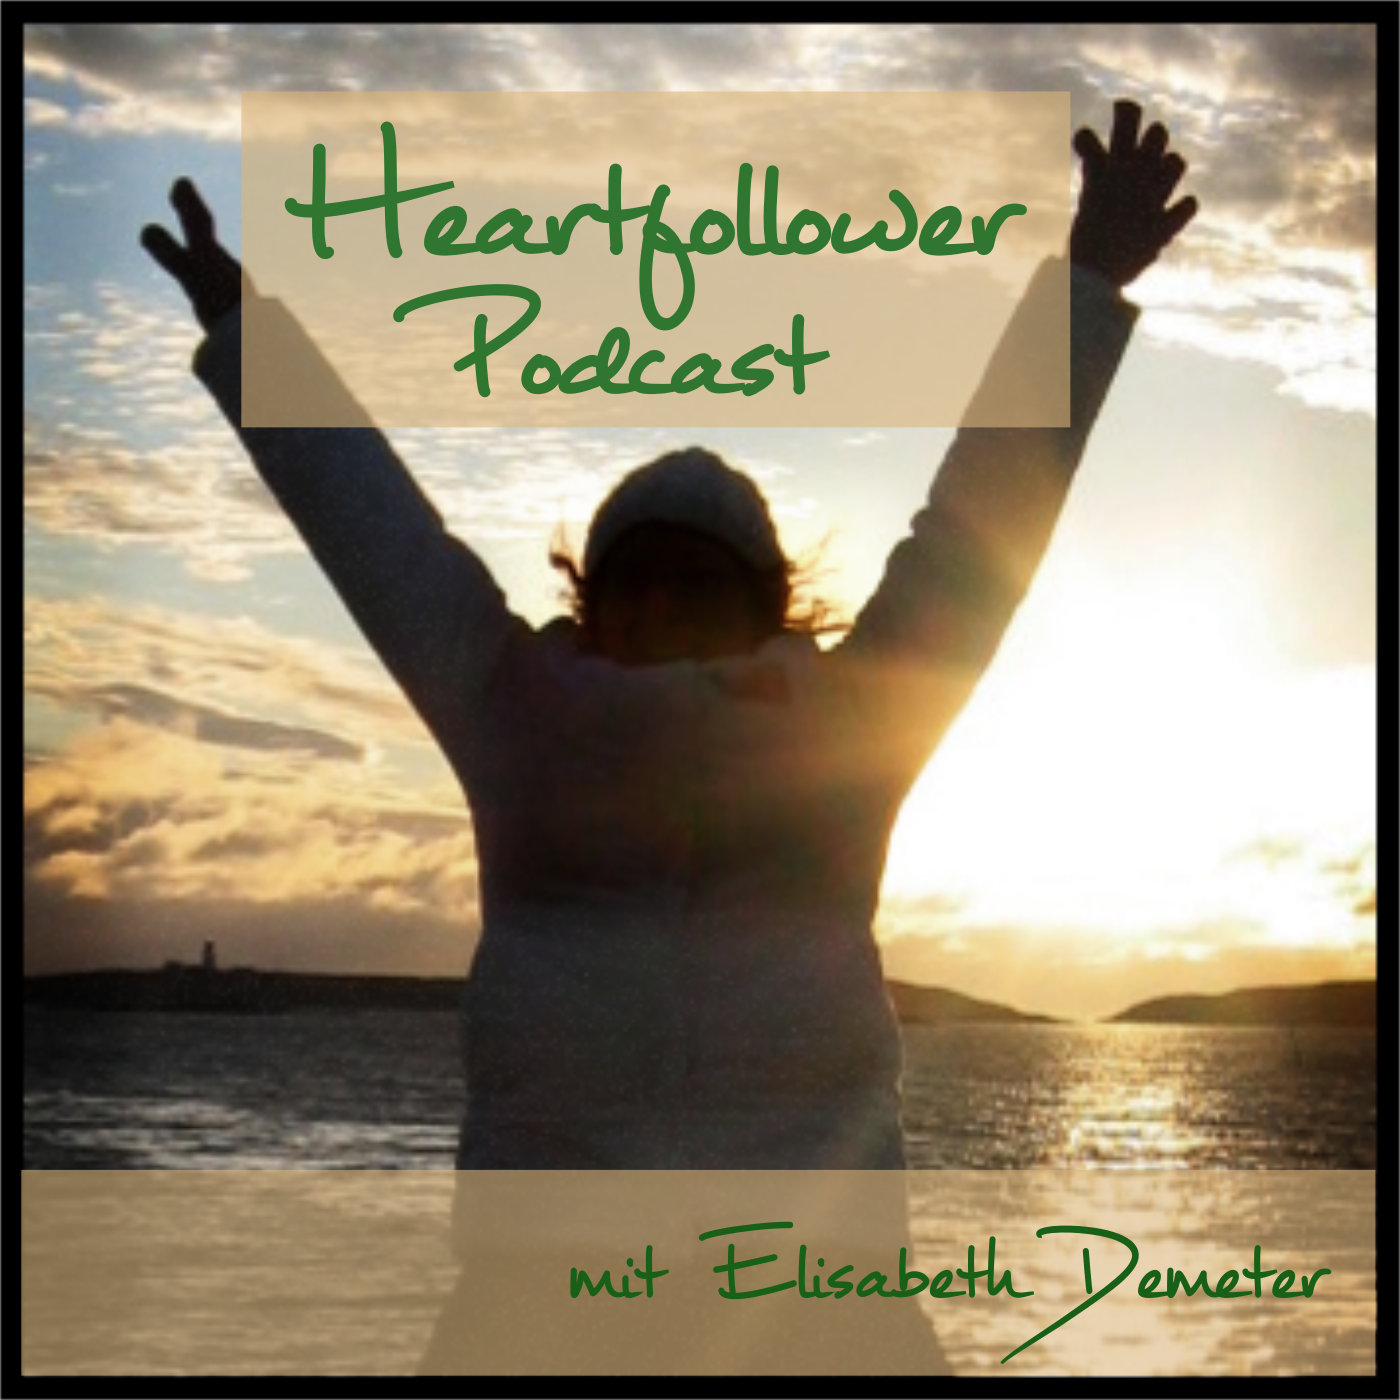 Heartfollower Podcast